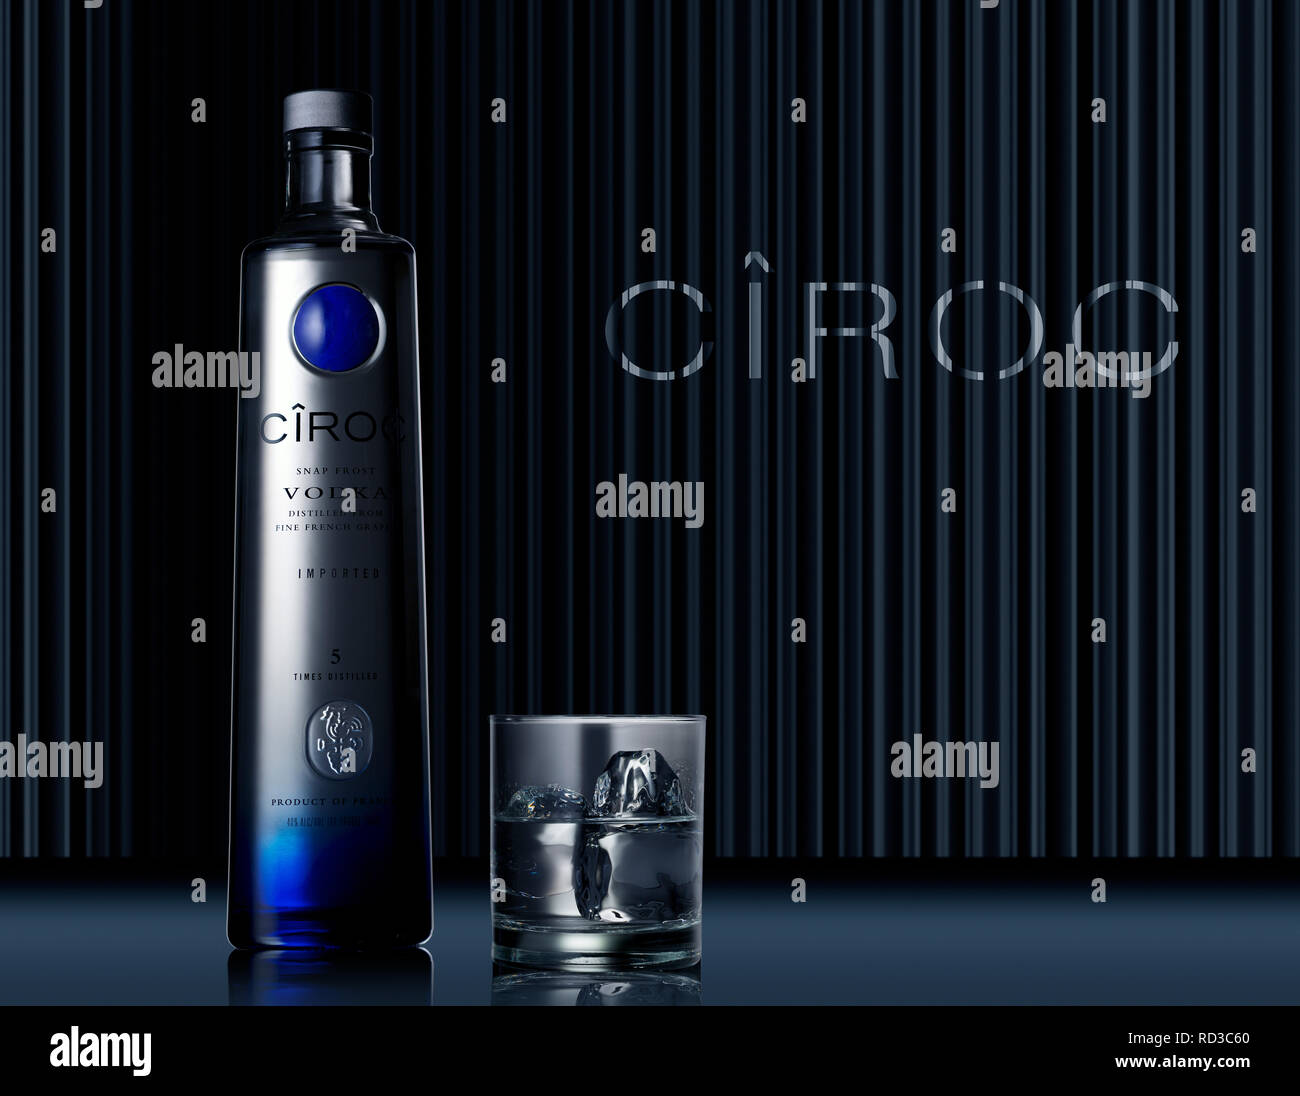 Ancora in vita della bottiglia e bicchiere di vodka Ciroc, studio shot Foto Stock